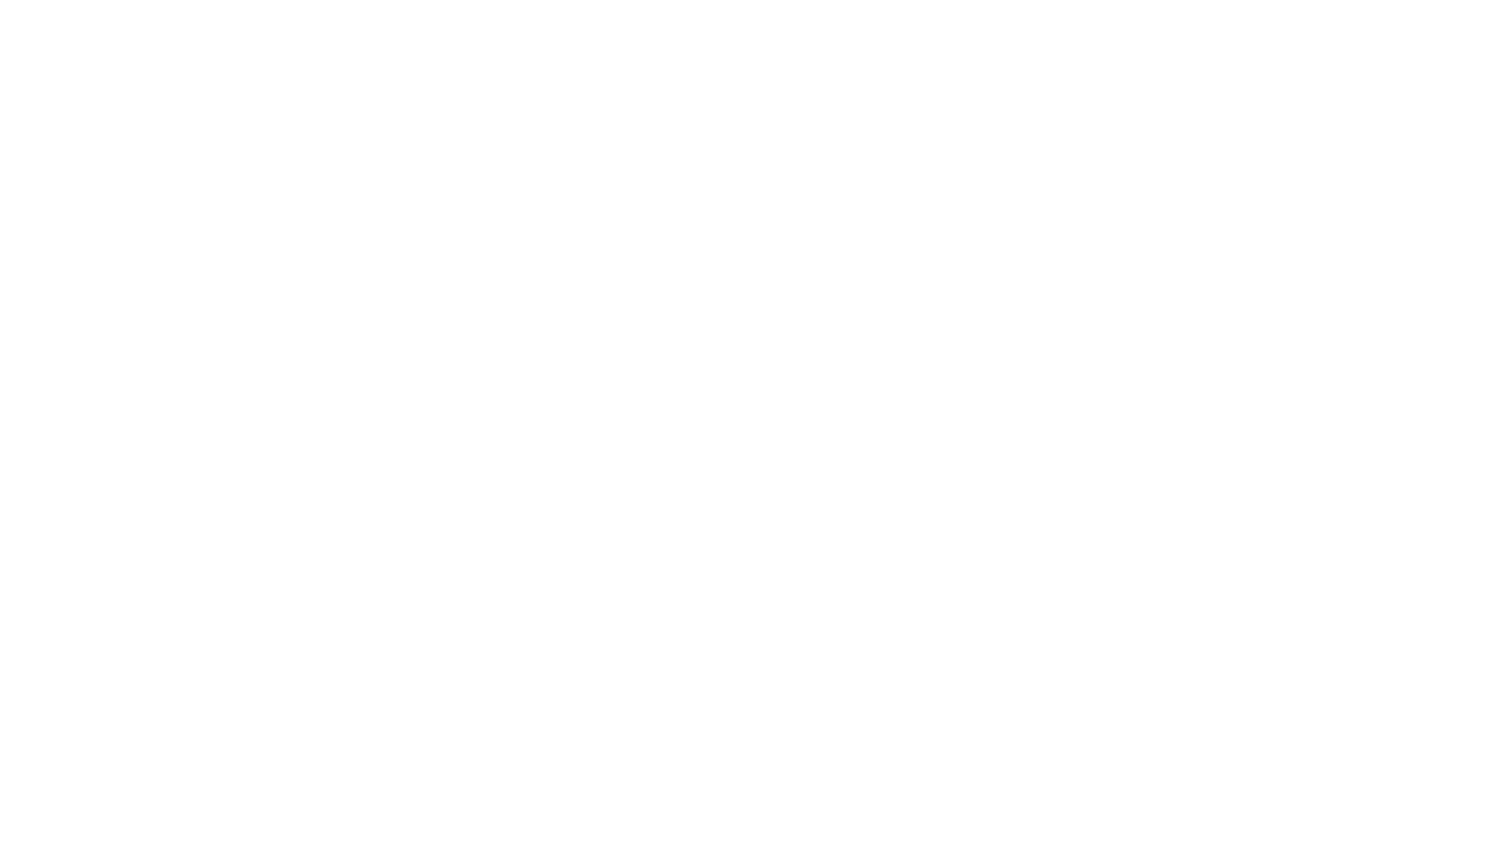 The Ballroom KC